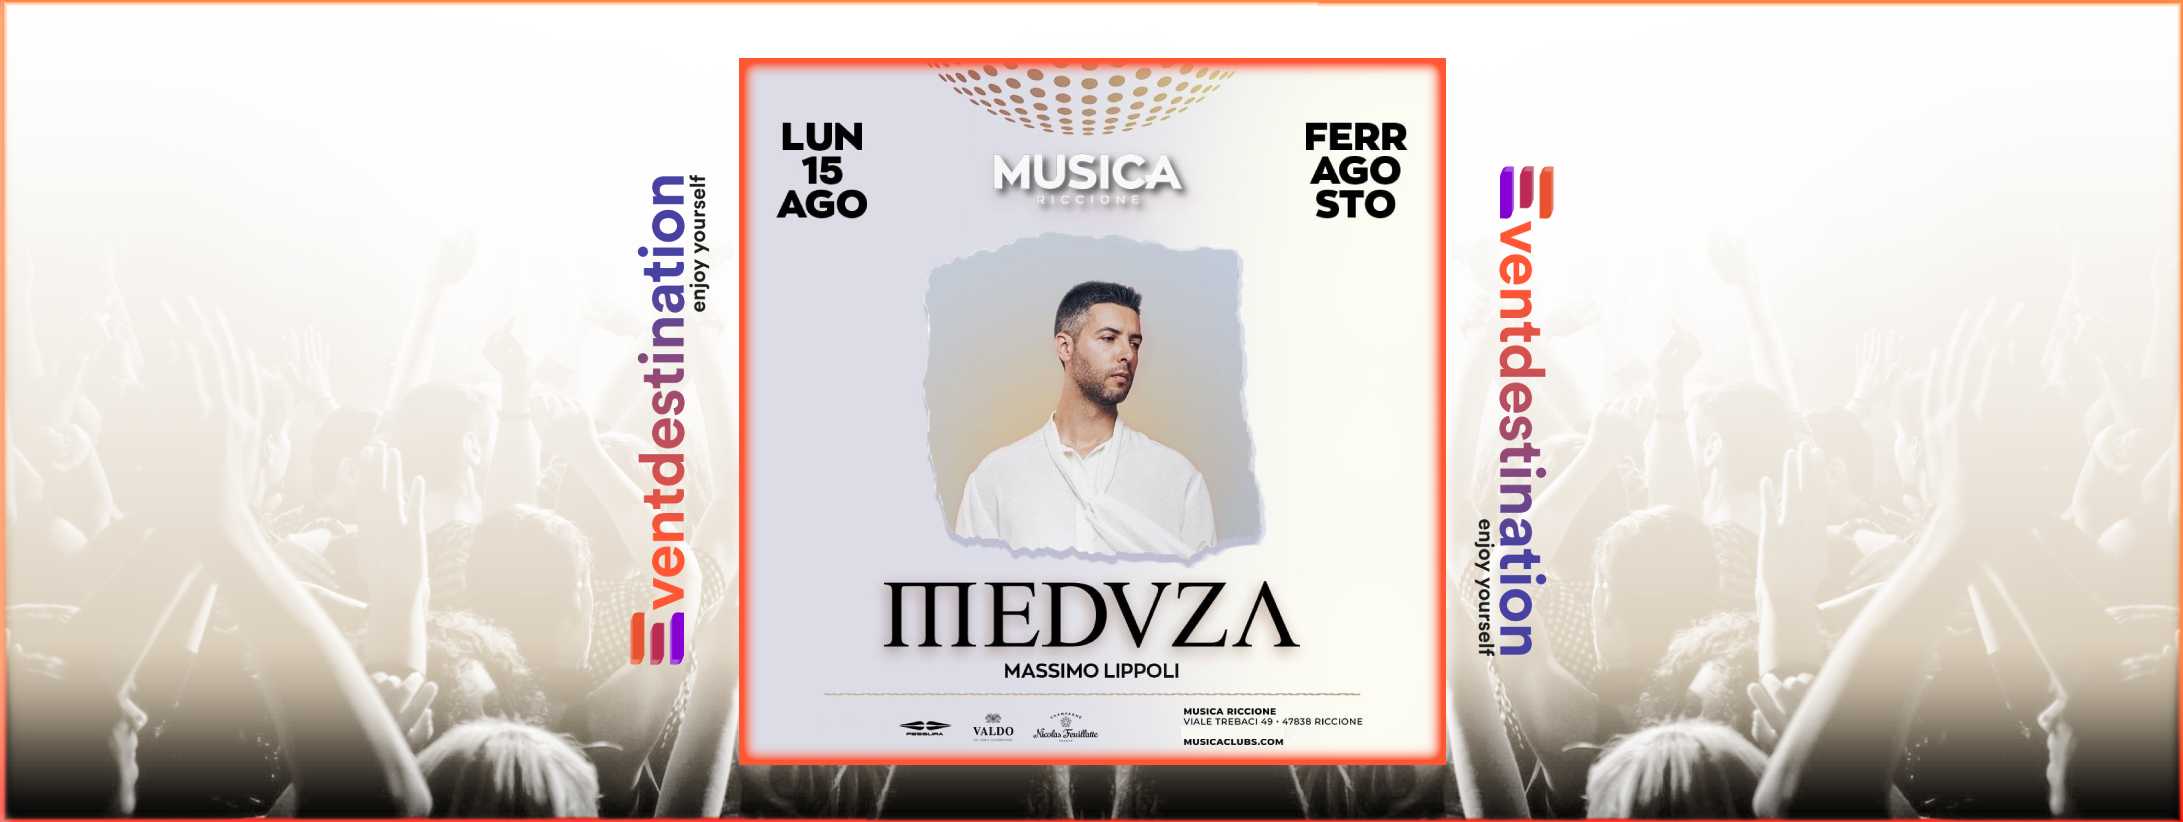 MEDUZA @ Musica Riccione 15 ago 2022